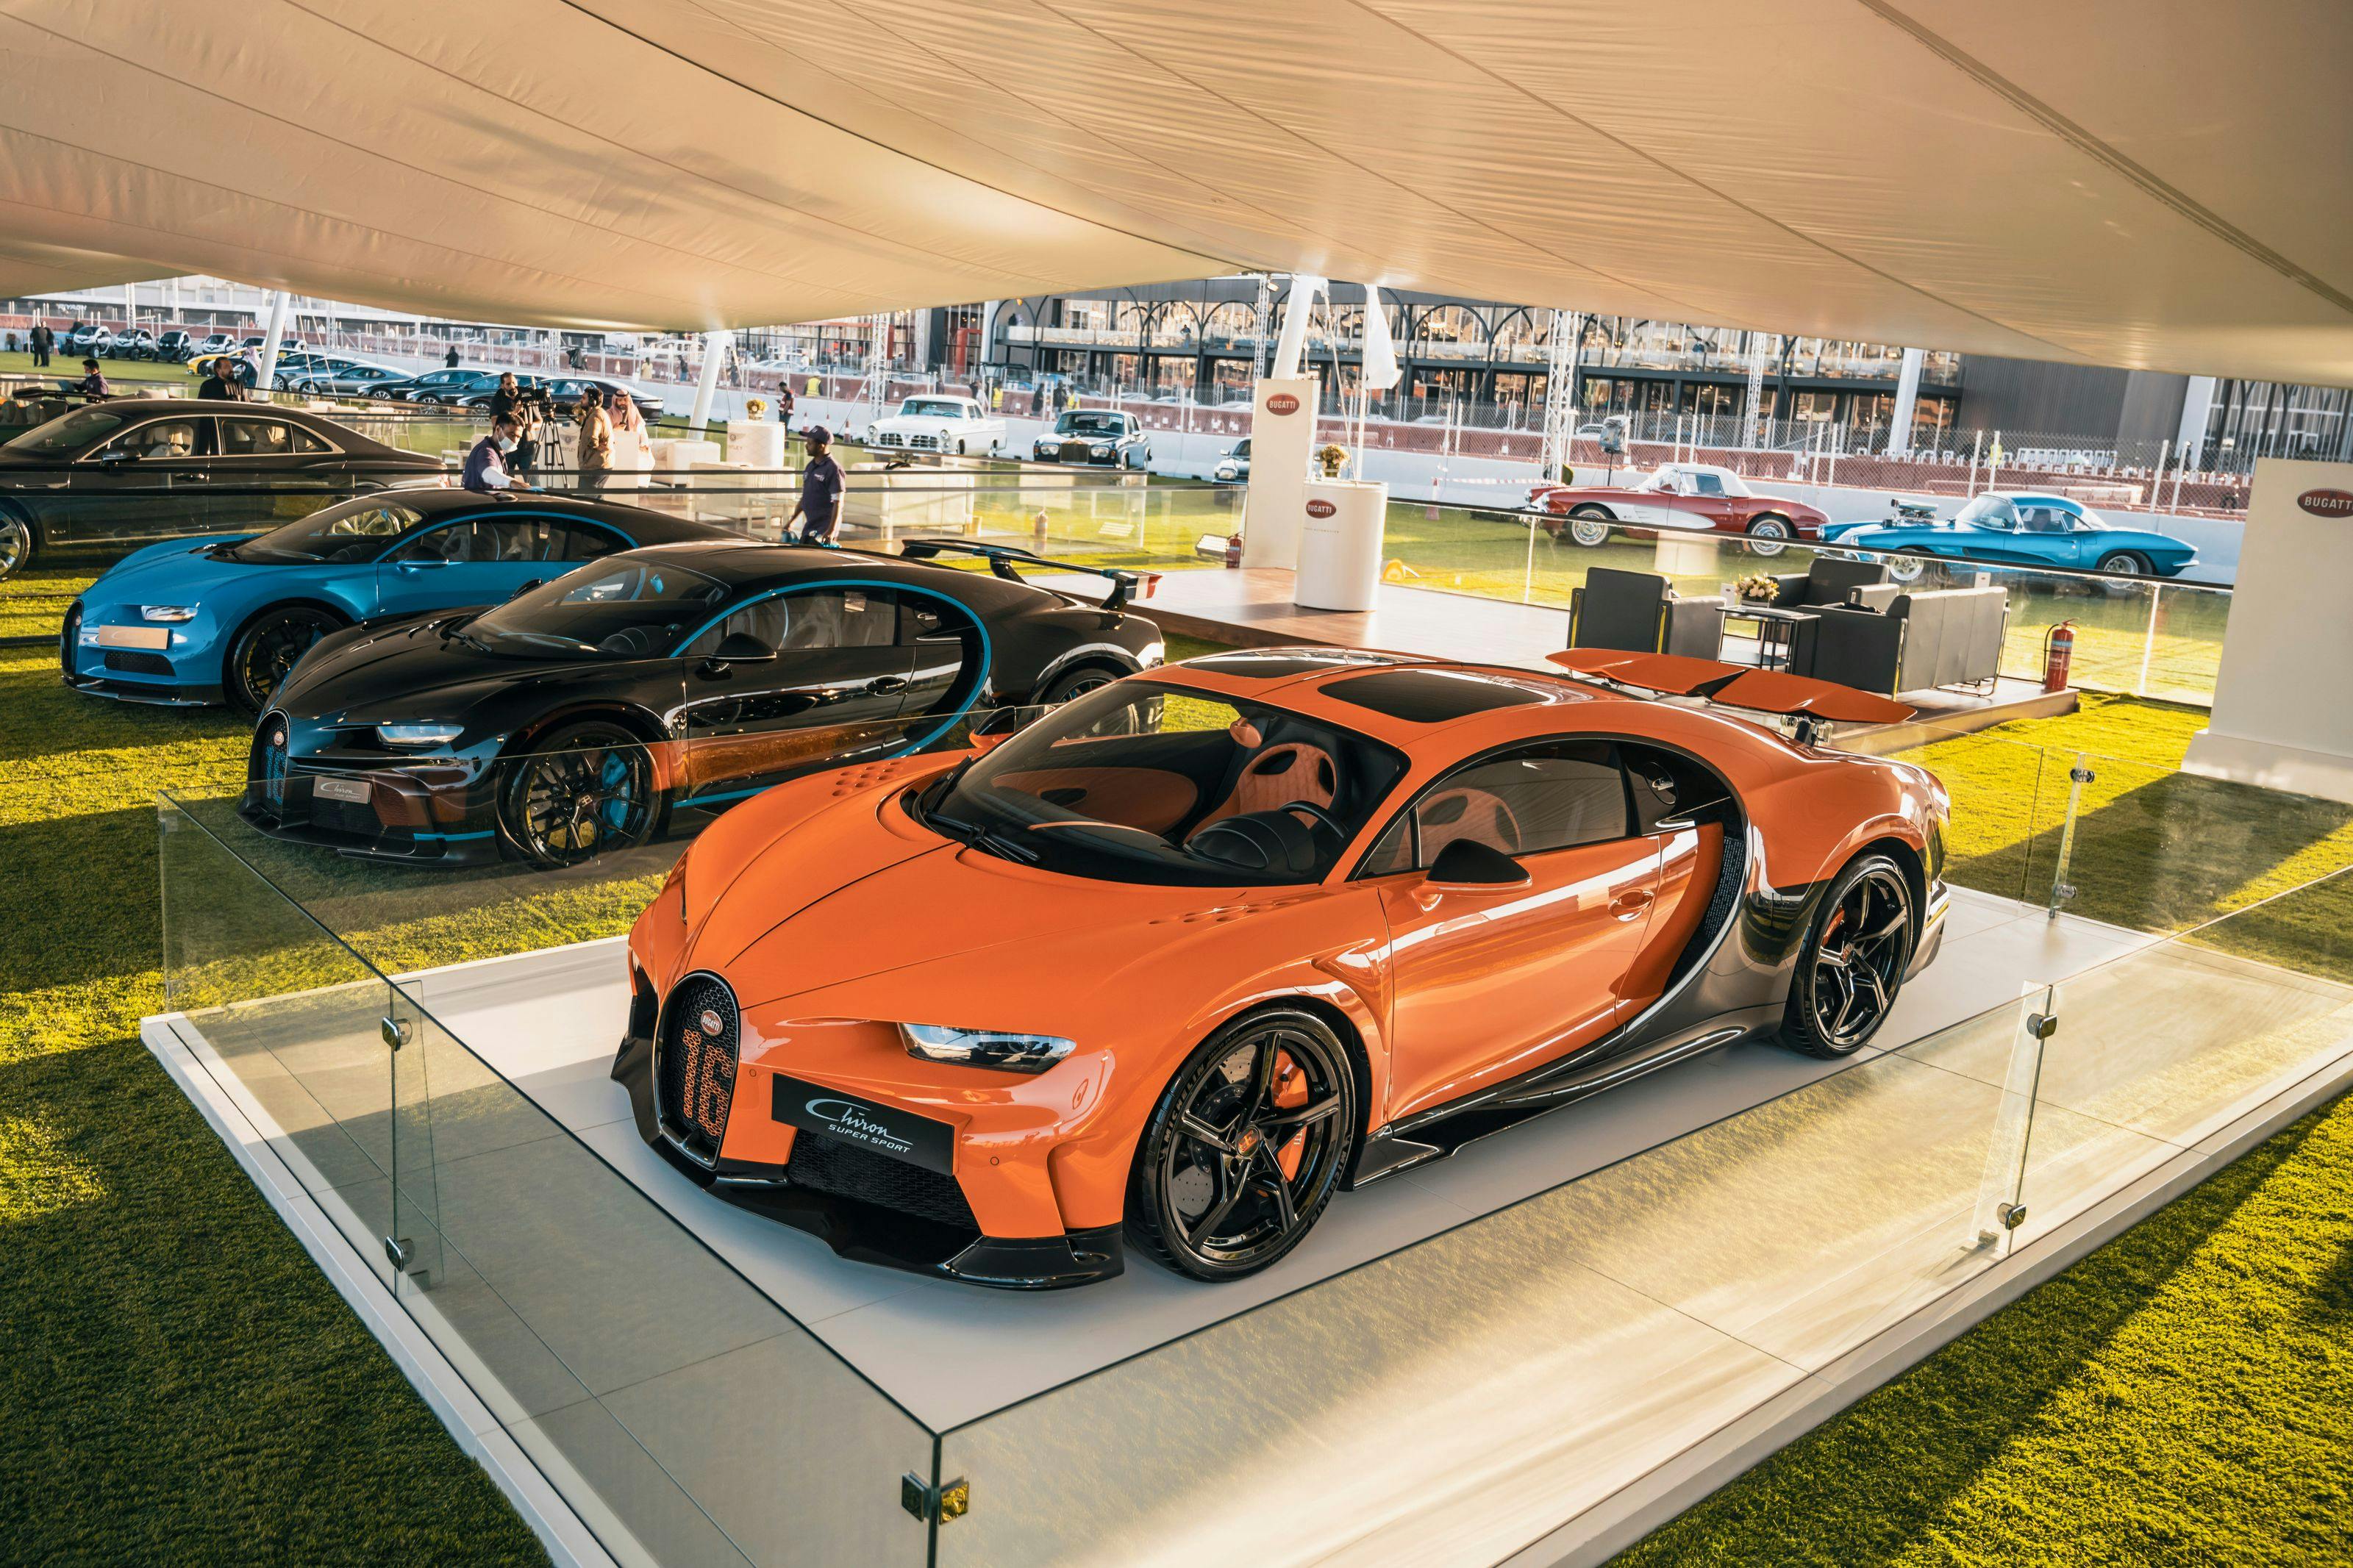 Bugatti in Saudi-Arabien – Größter Bugatti-Showroom in Riad eröffnet